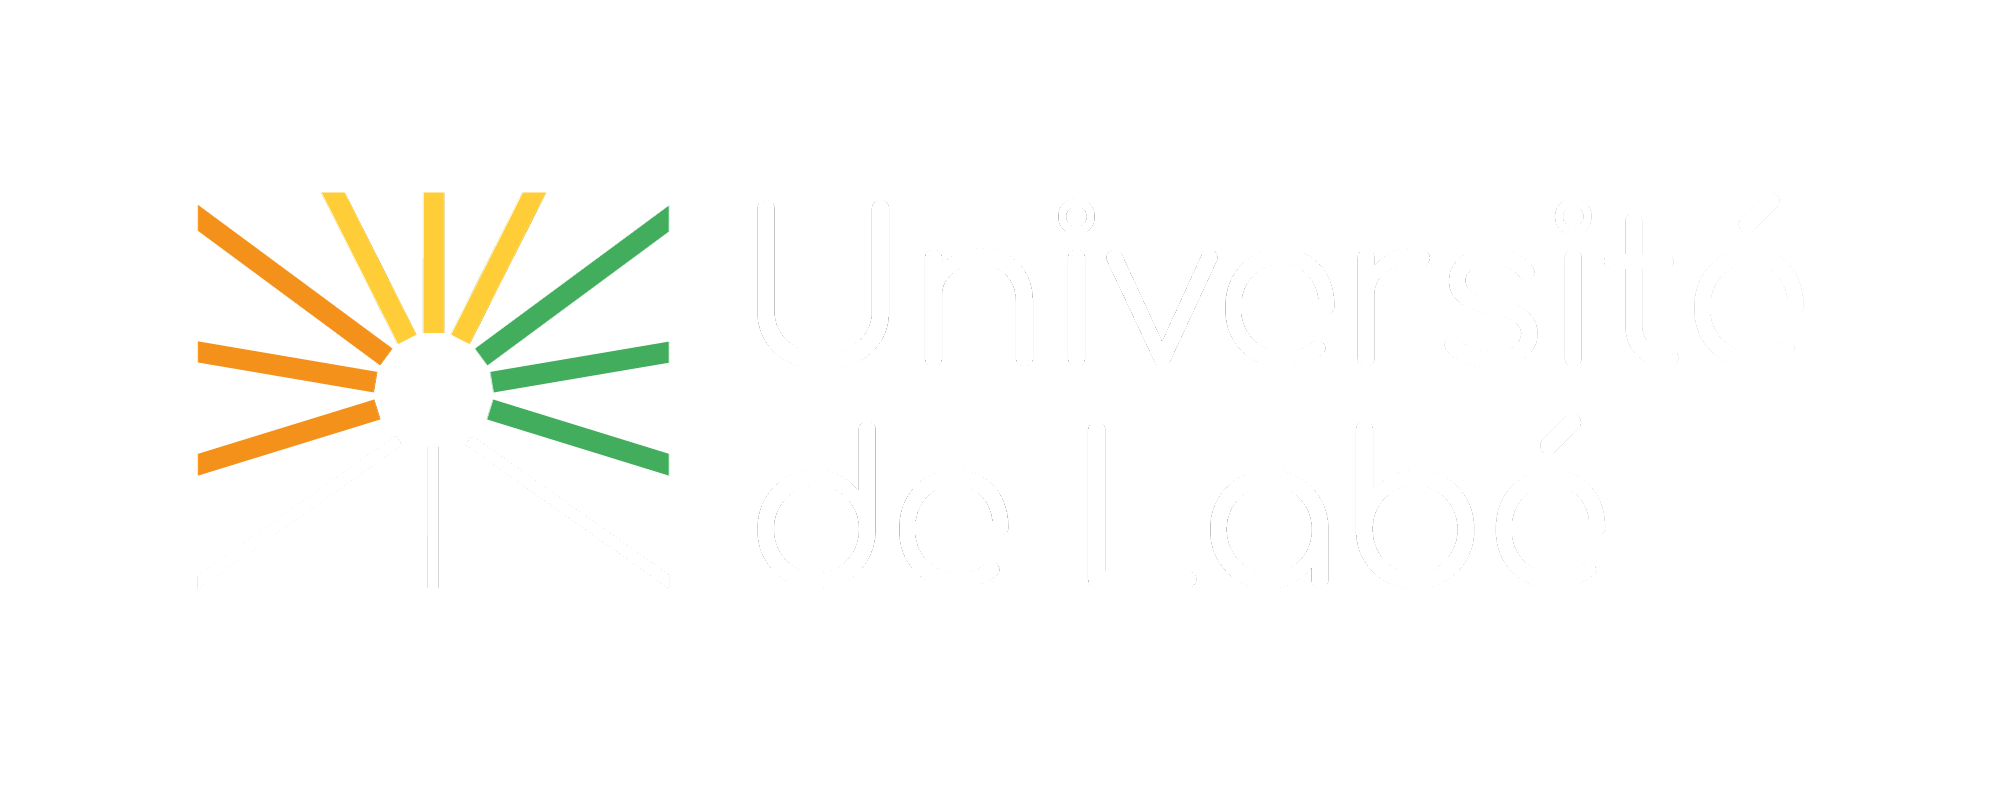 Université de Labé